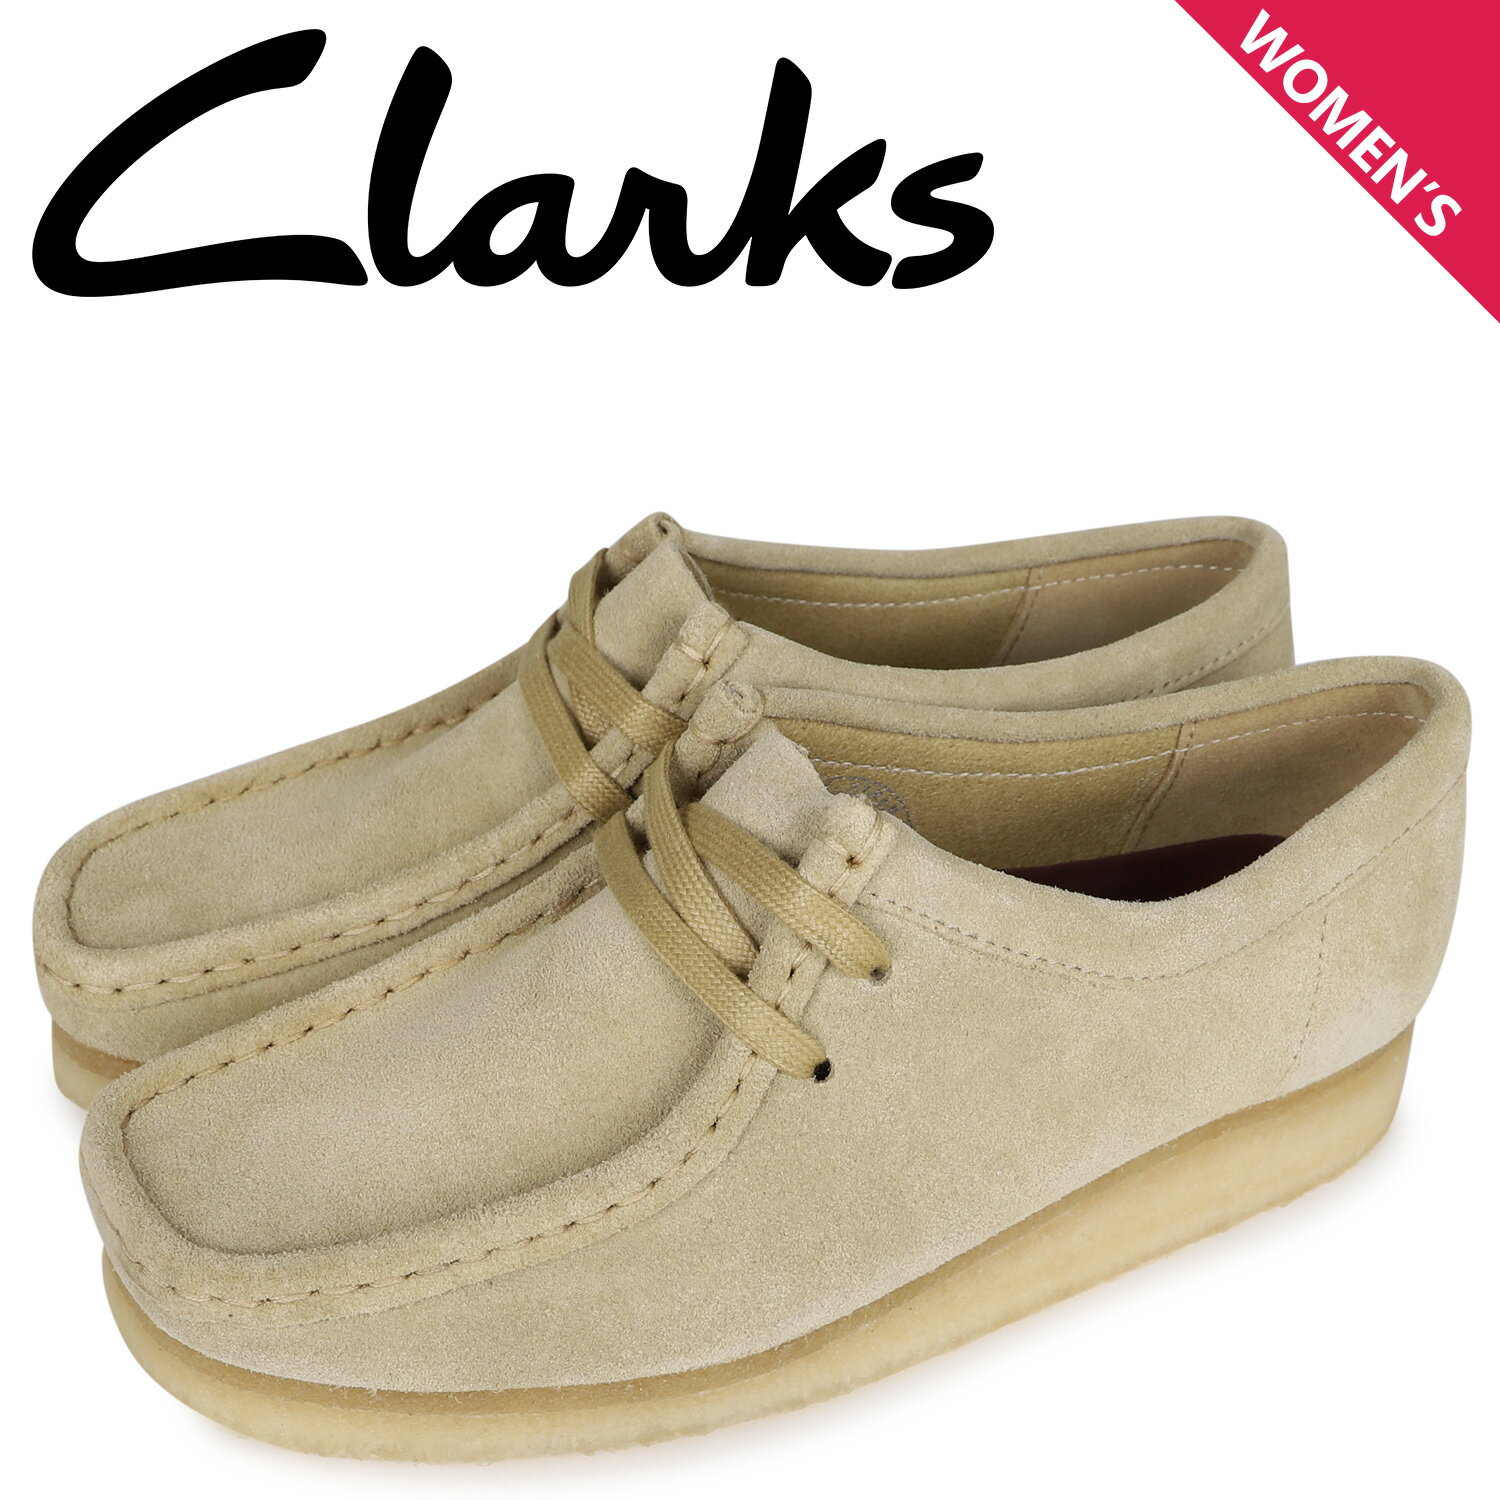 クラークス Clarks ワラビー ブーツ レディース WALLABEE ベージュ 26155545